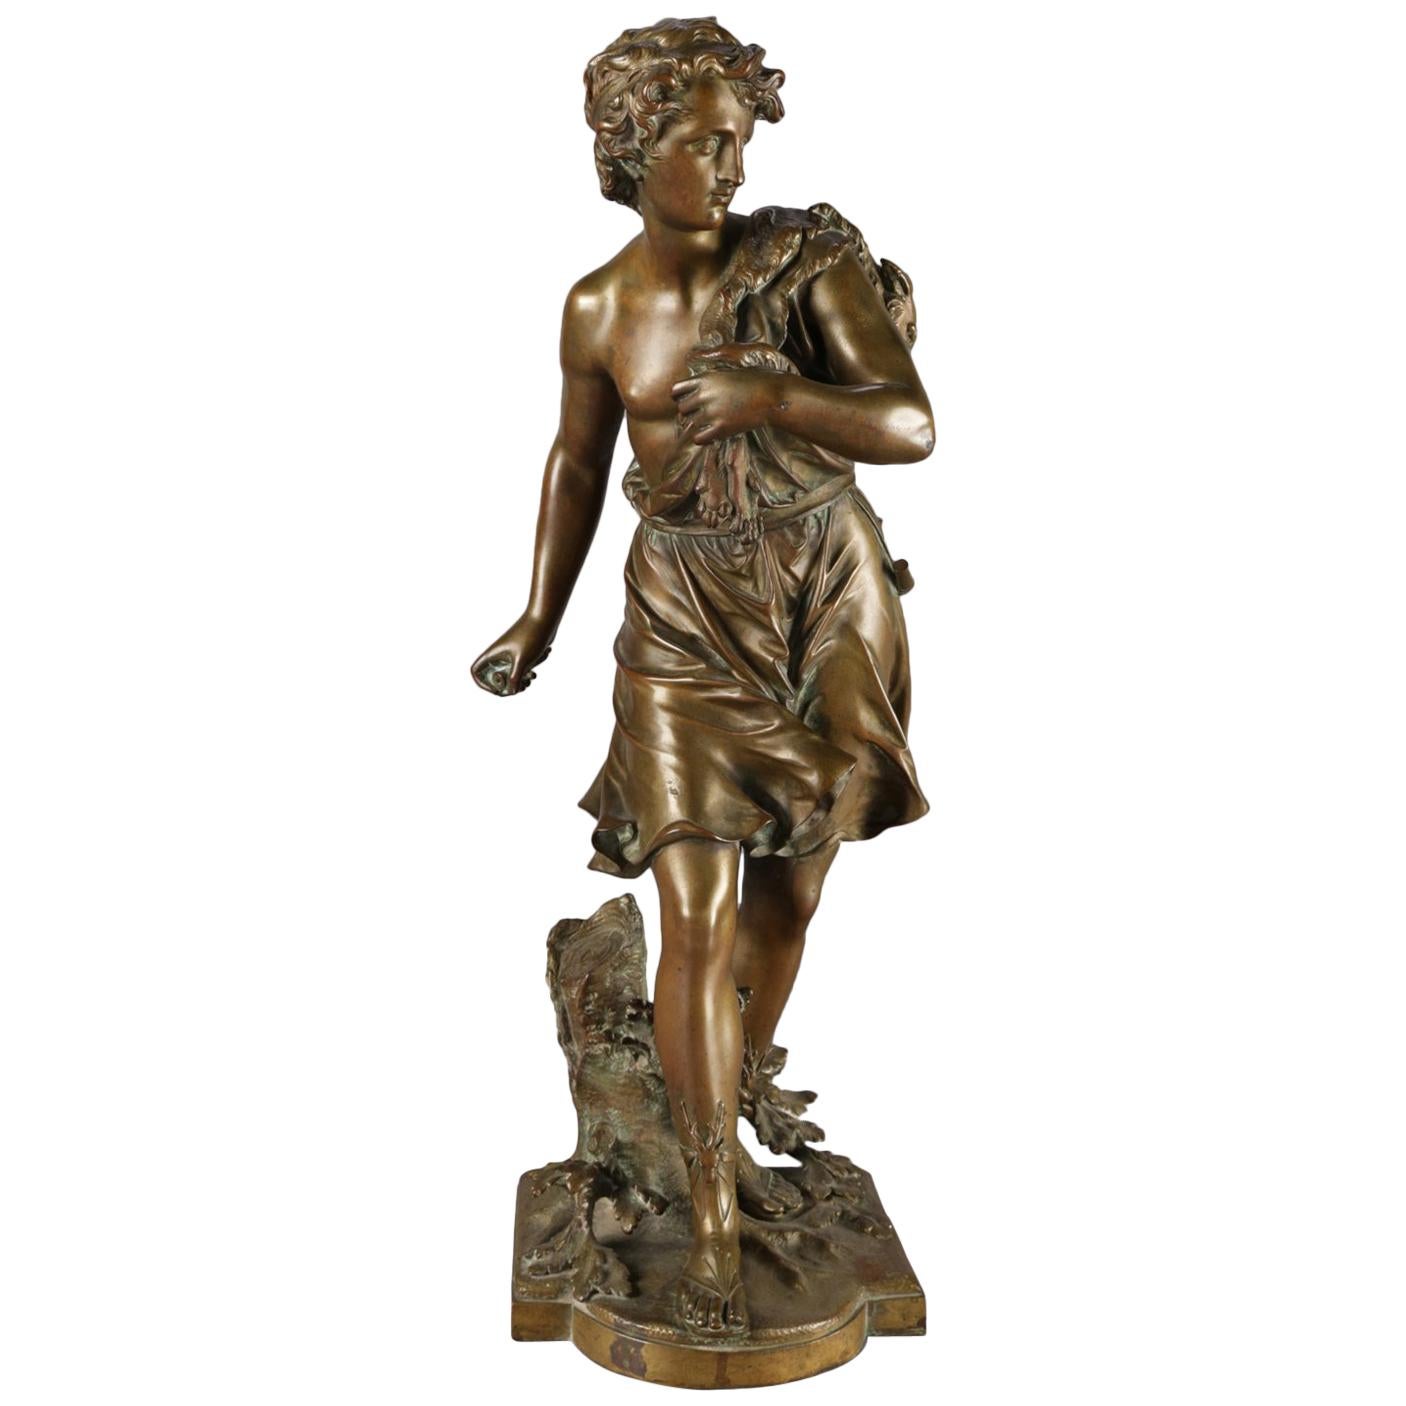 Antique French Figural Cast Bronze Portrait Sculpture of a Boy Signed Bouret